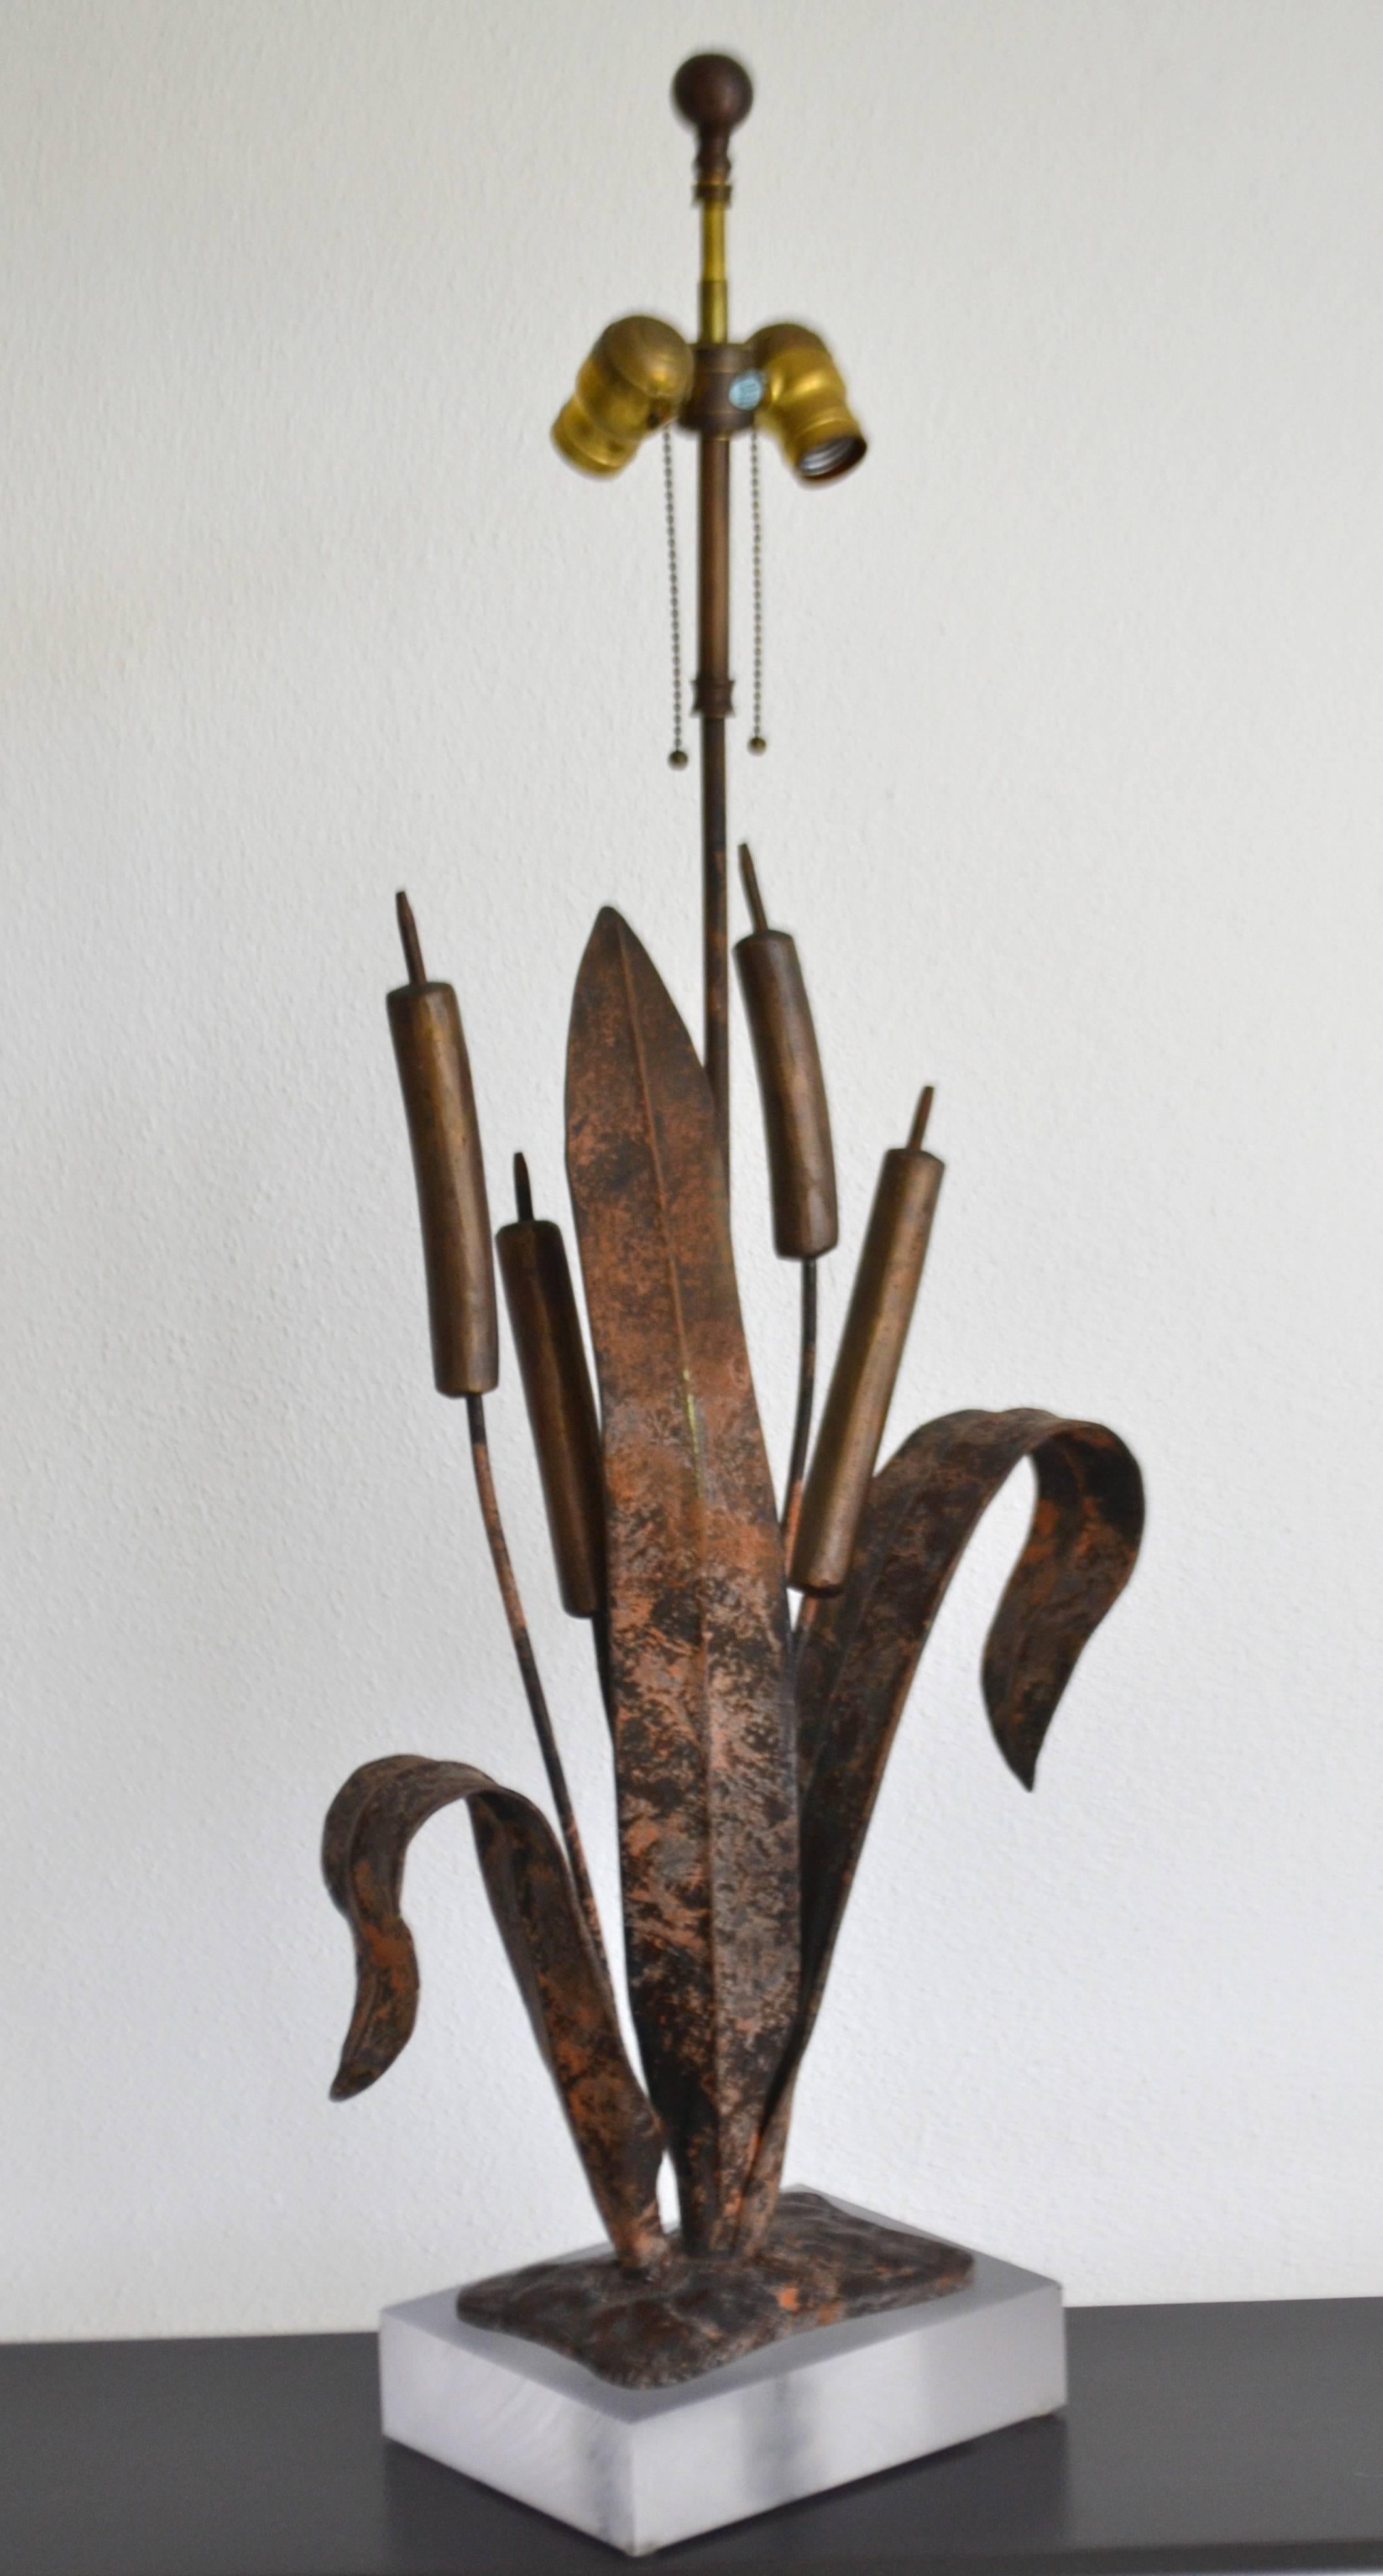 American Postmodern Brutalist Sculptural Table Lamp